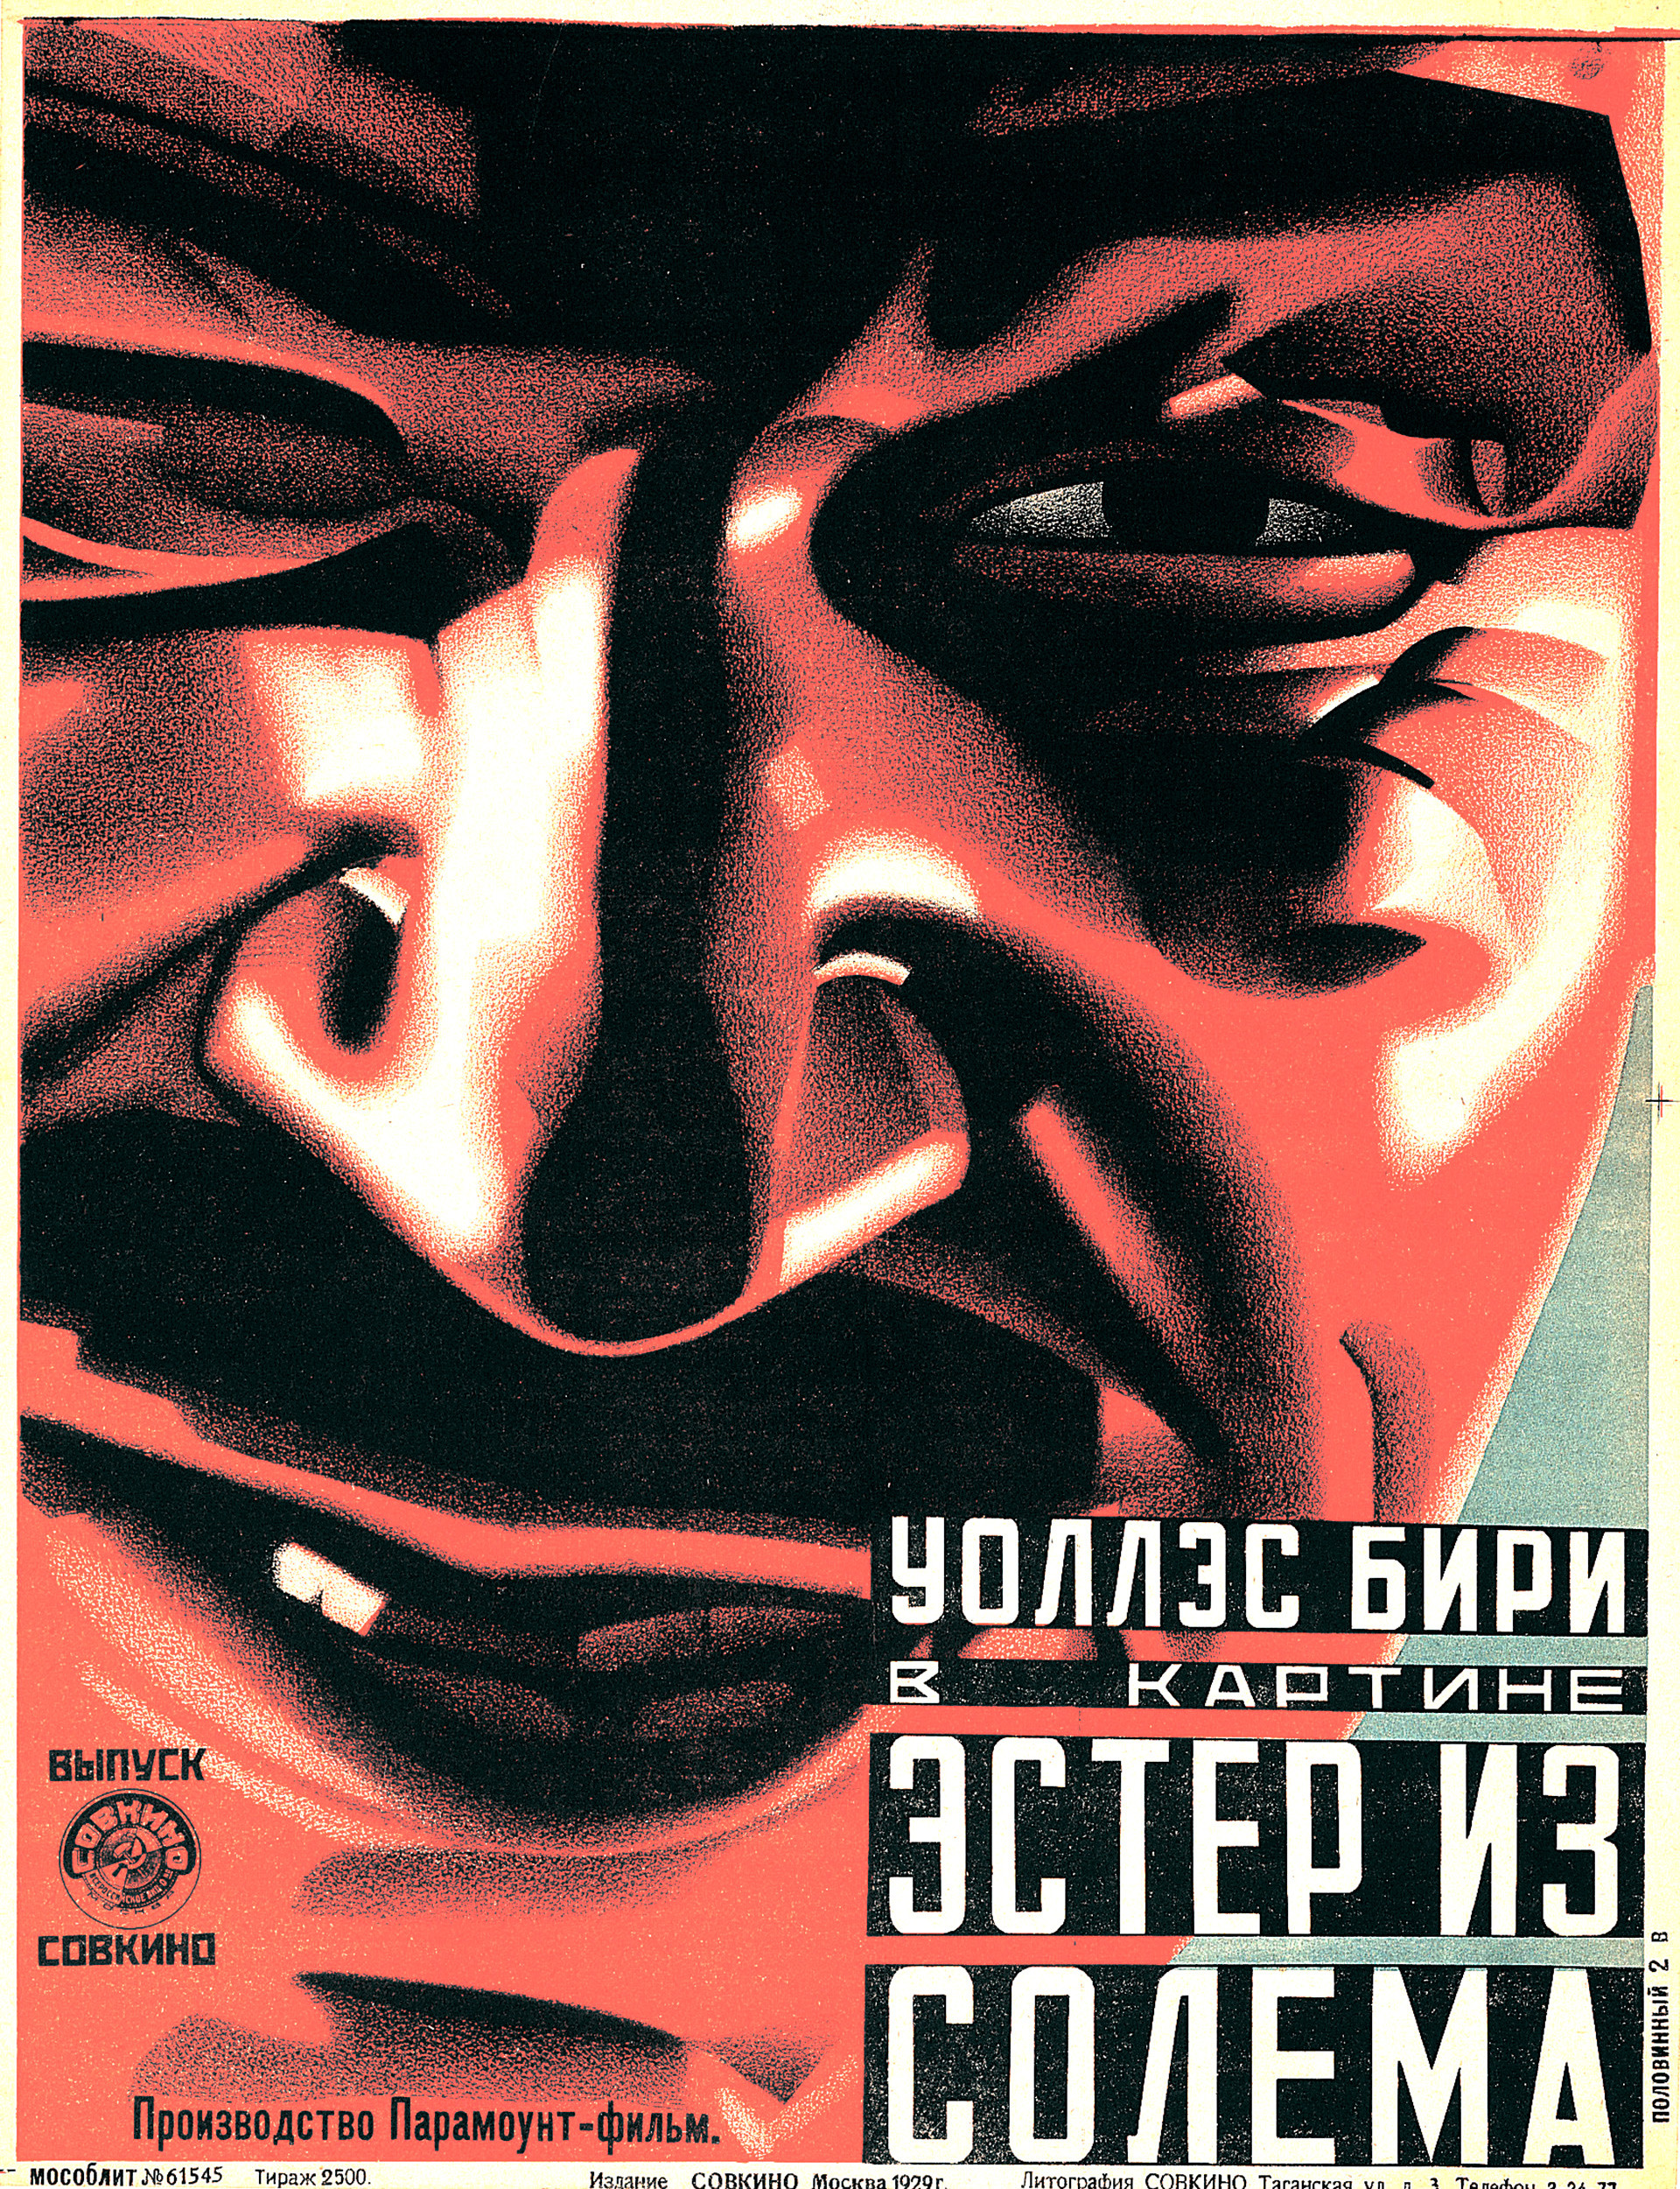 作者不詳、映画『ソレムのエステル』（1929）のポスター